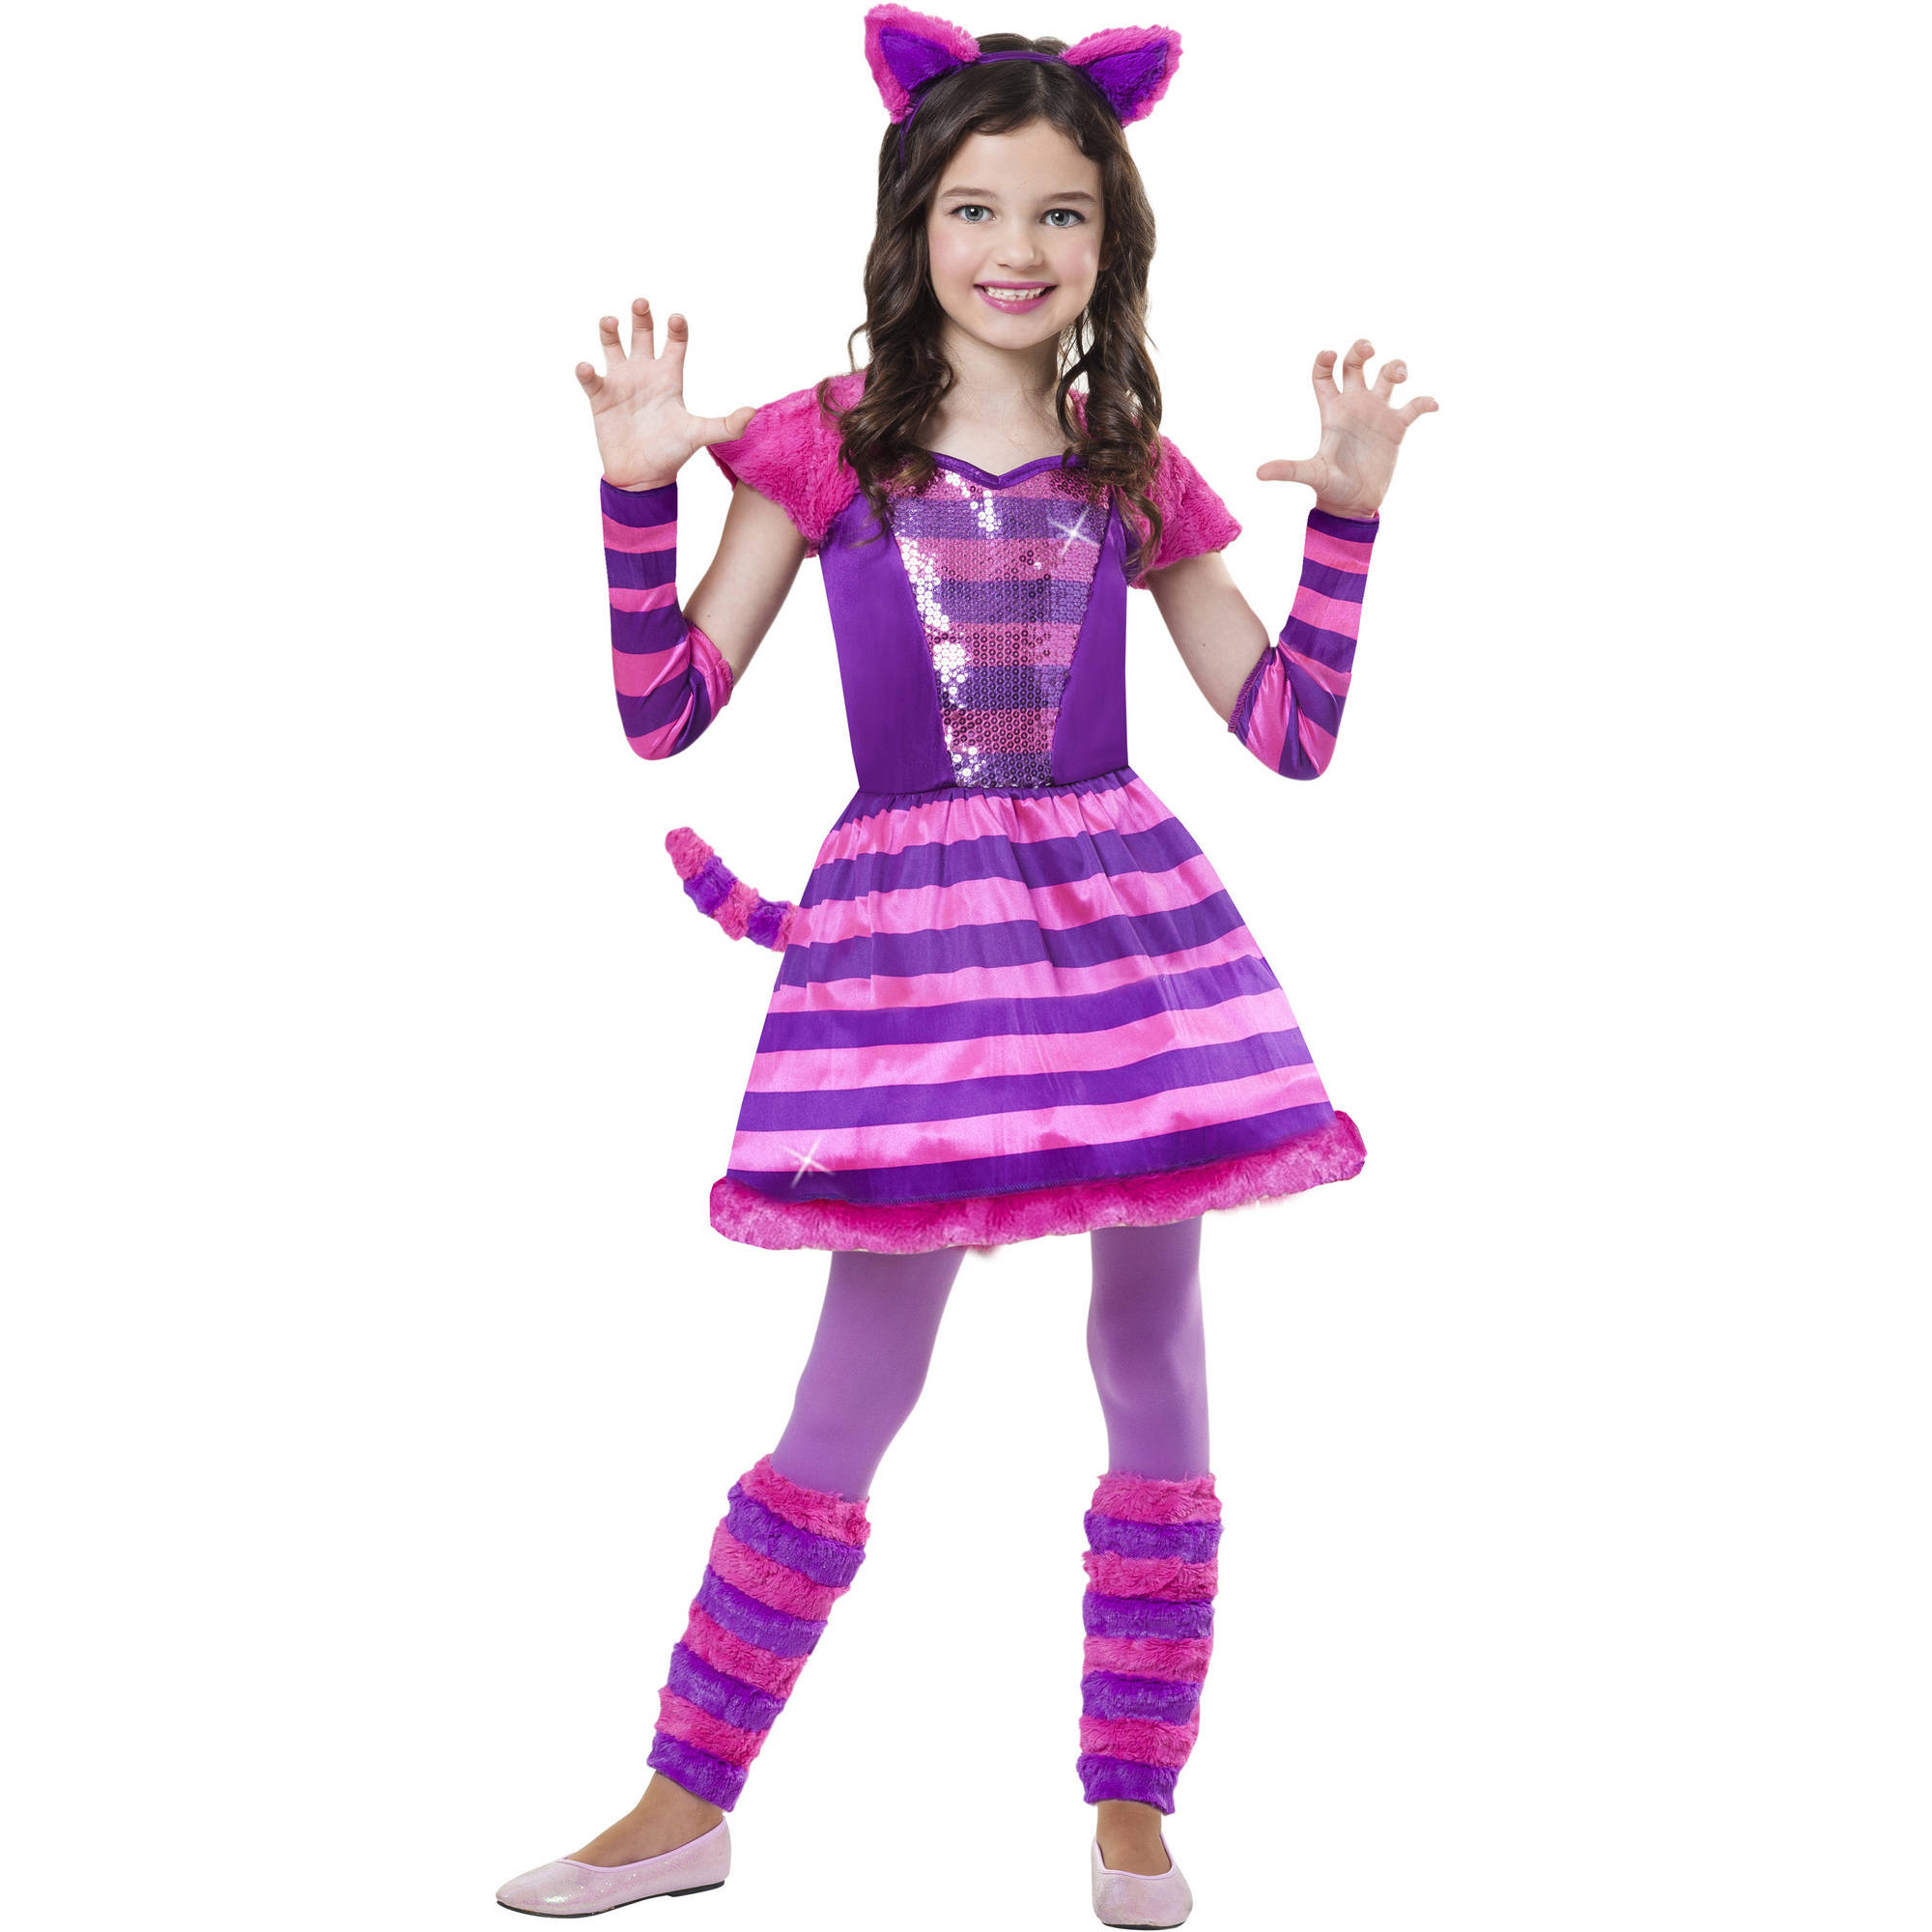 Cheeky Cheshire Child Halloween Costume.